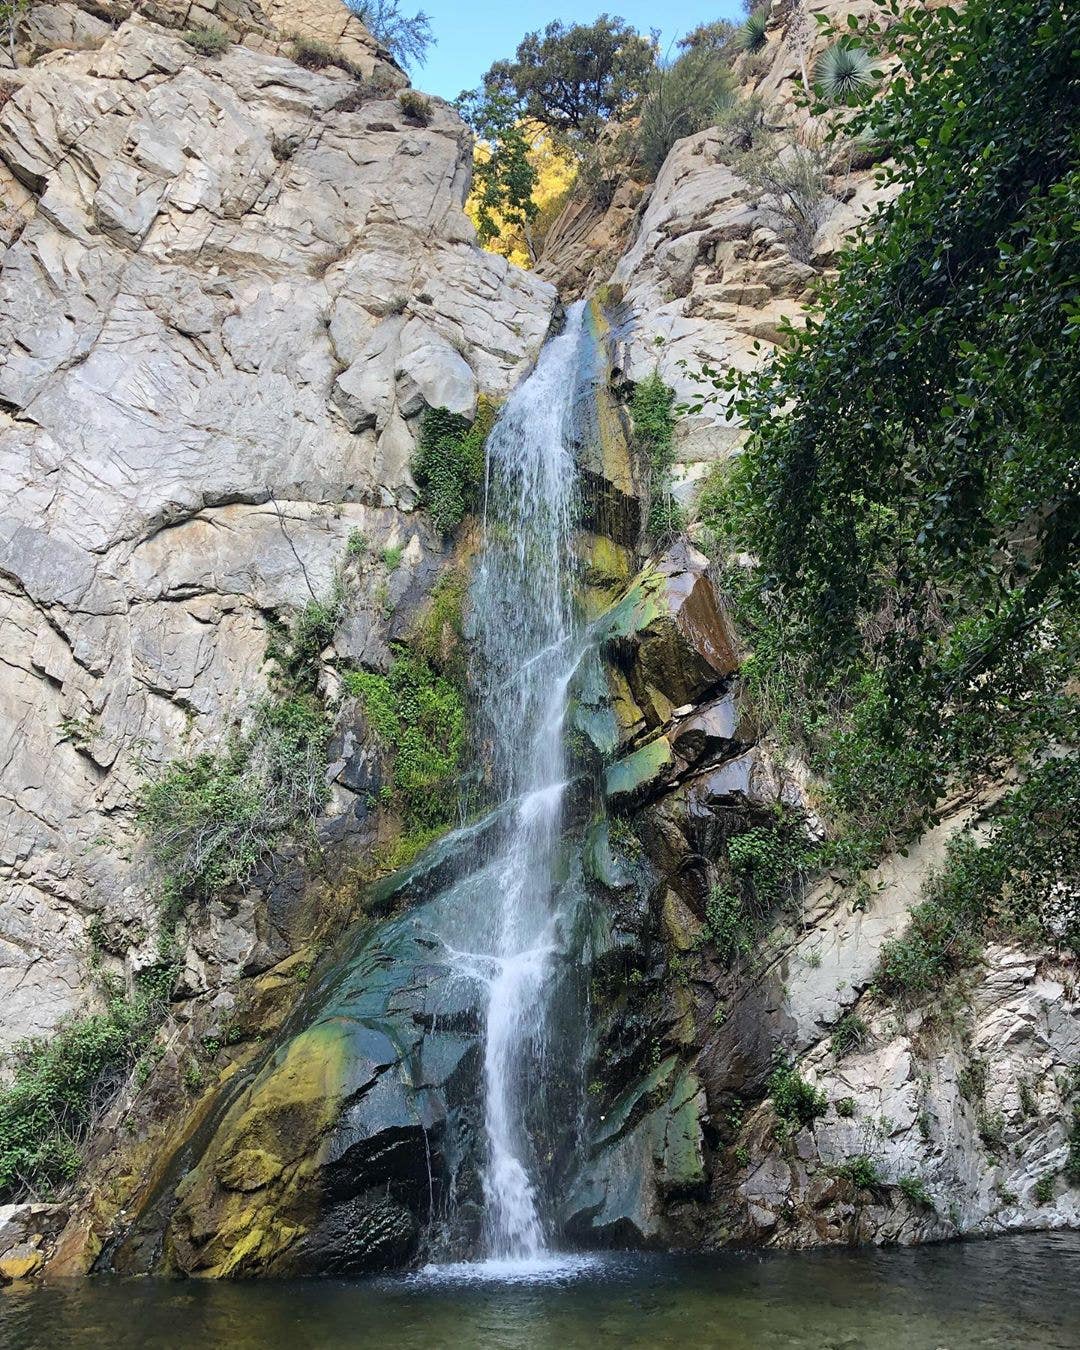 Sturtevant Falls in Arcadia, Summer 2019